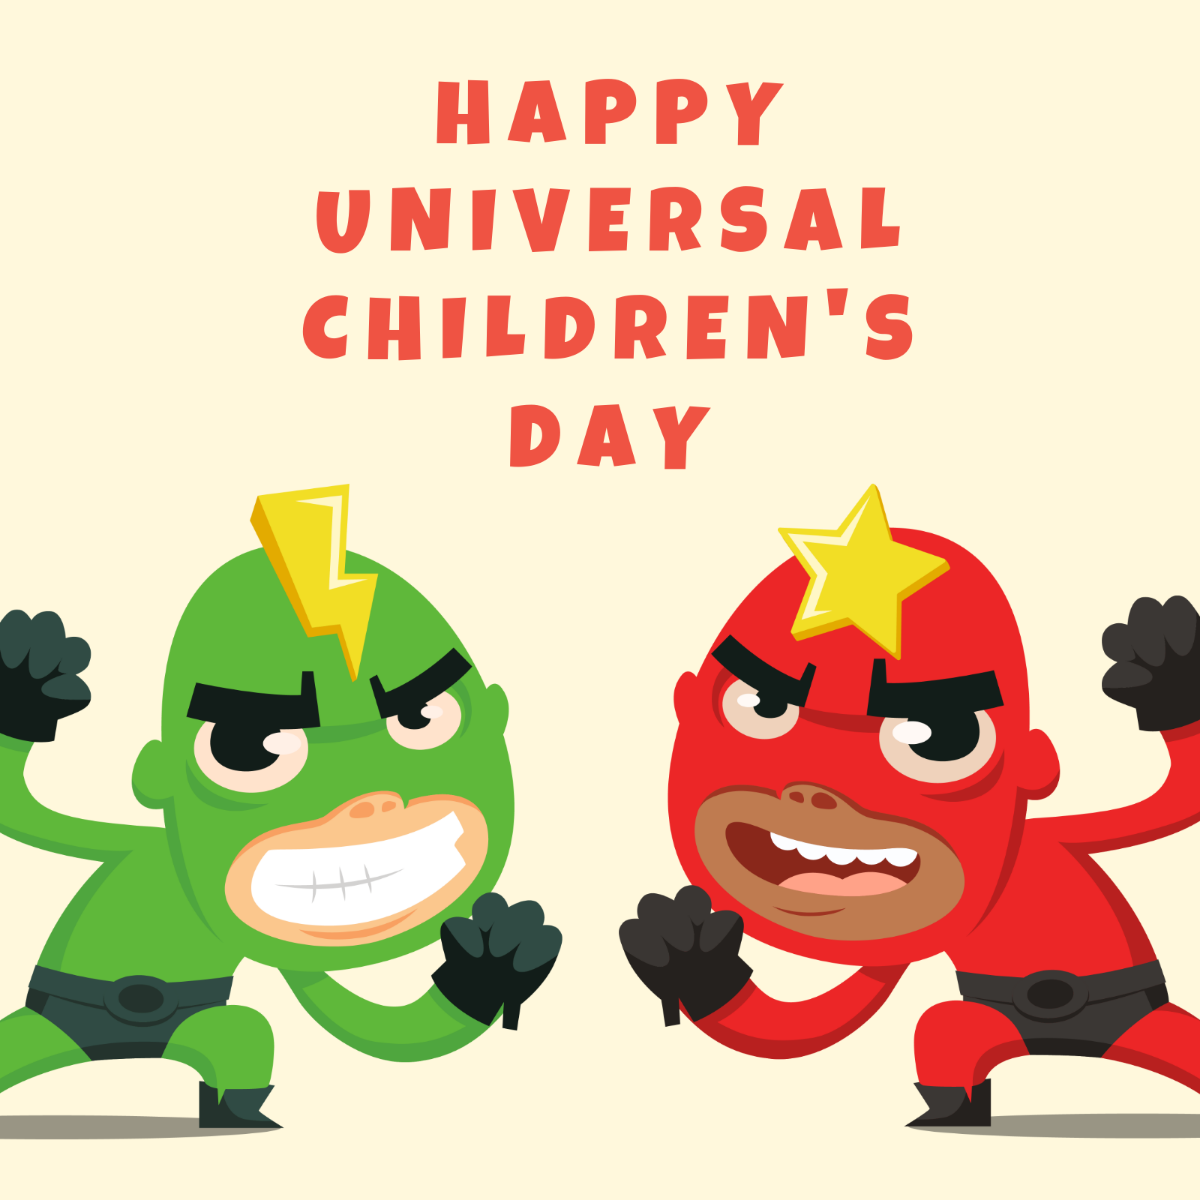 Free Universal Children’s Day WhatsApp Post Template